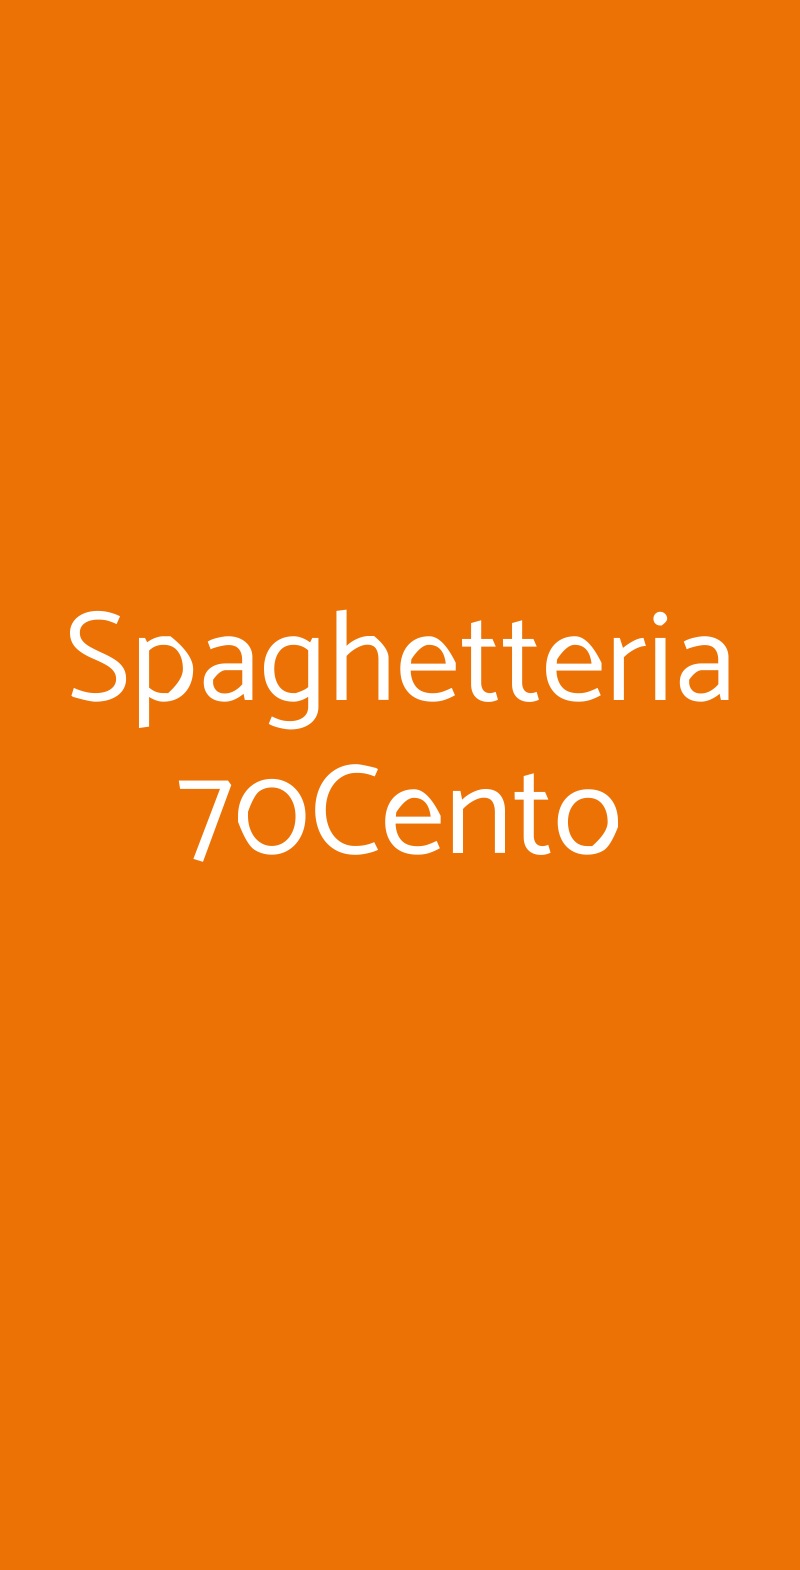 Spaghetteria 70Cento Bari menù 1 pagina